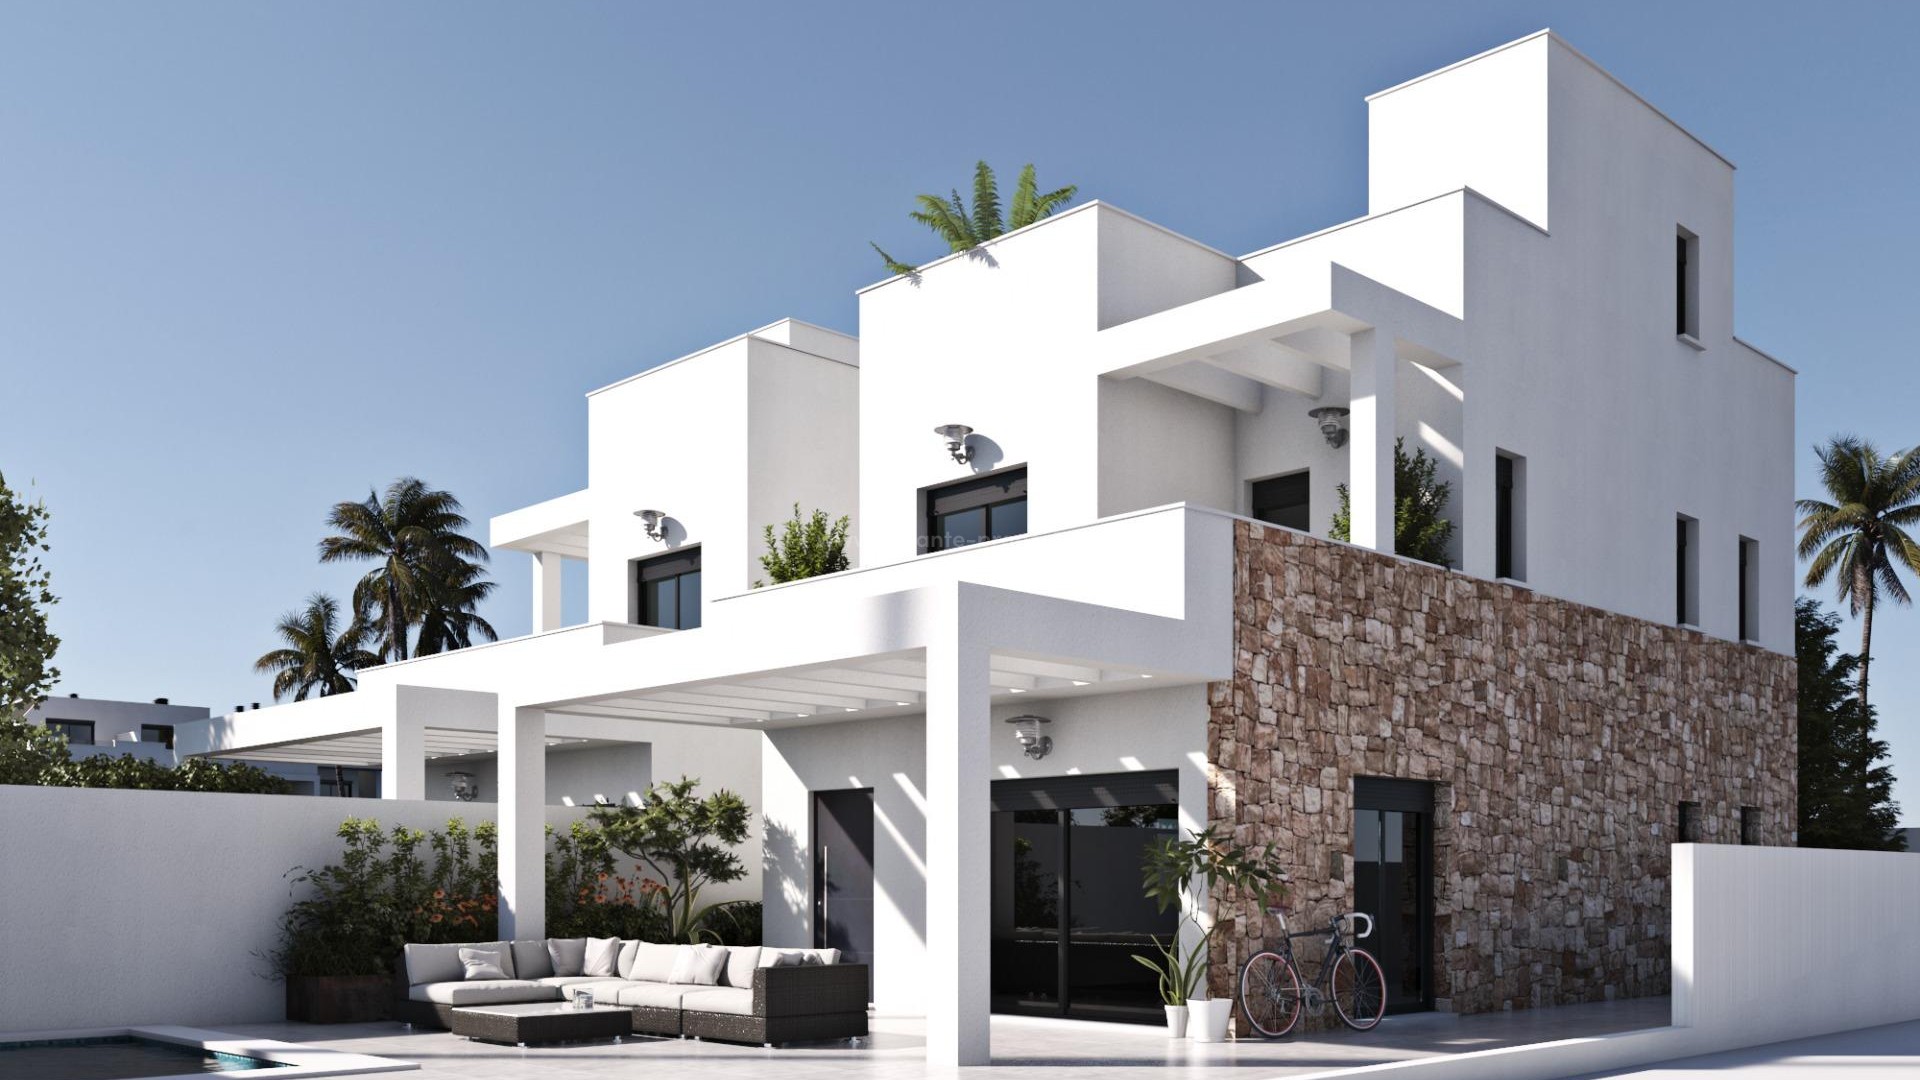 Villa og bungalows i Torre de La Horadada, 450m fra strand, 3 soverom, 3 bad, terrasse og solarium, privat hage med basseng og privat parkering